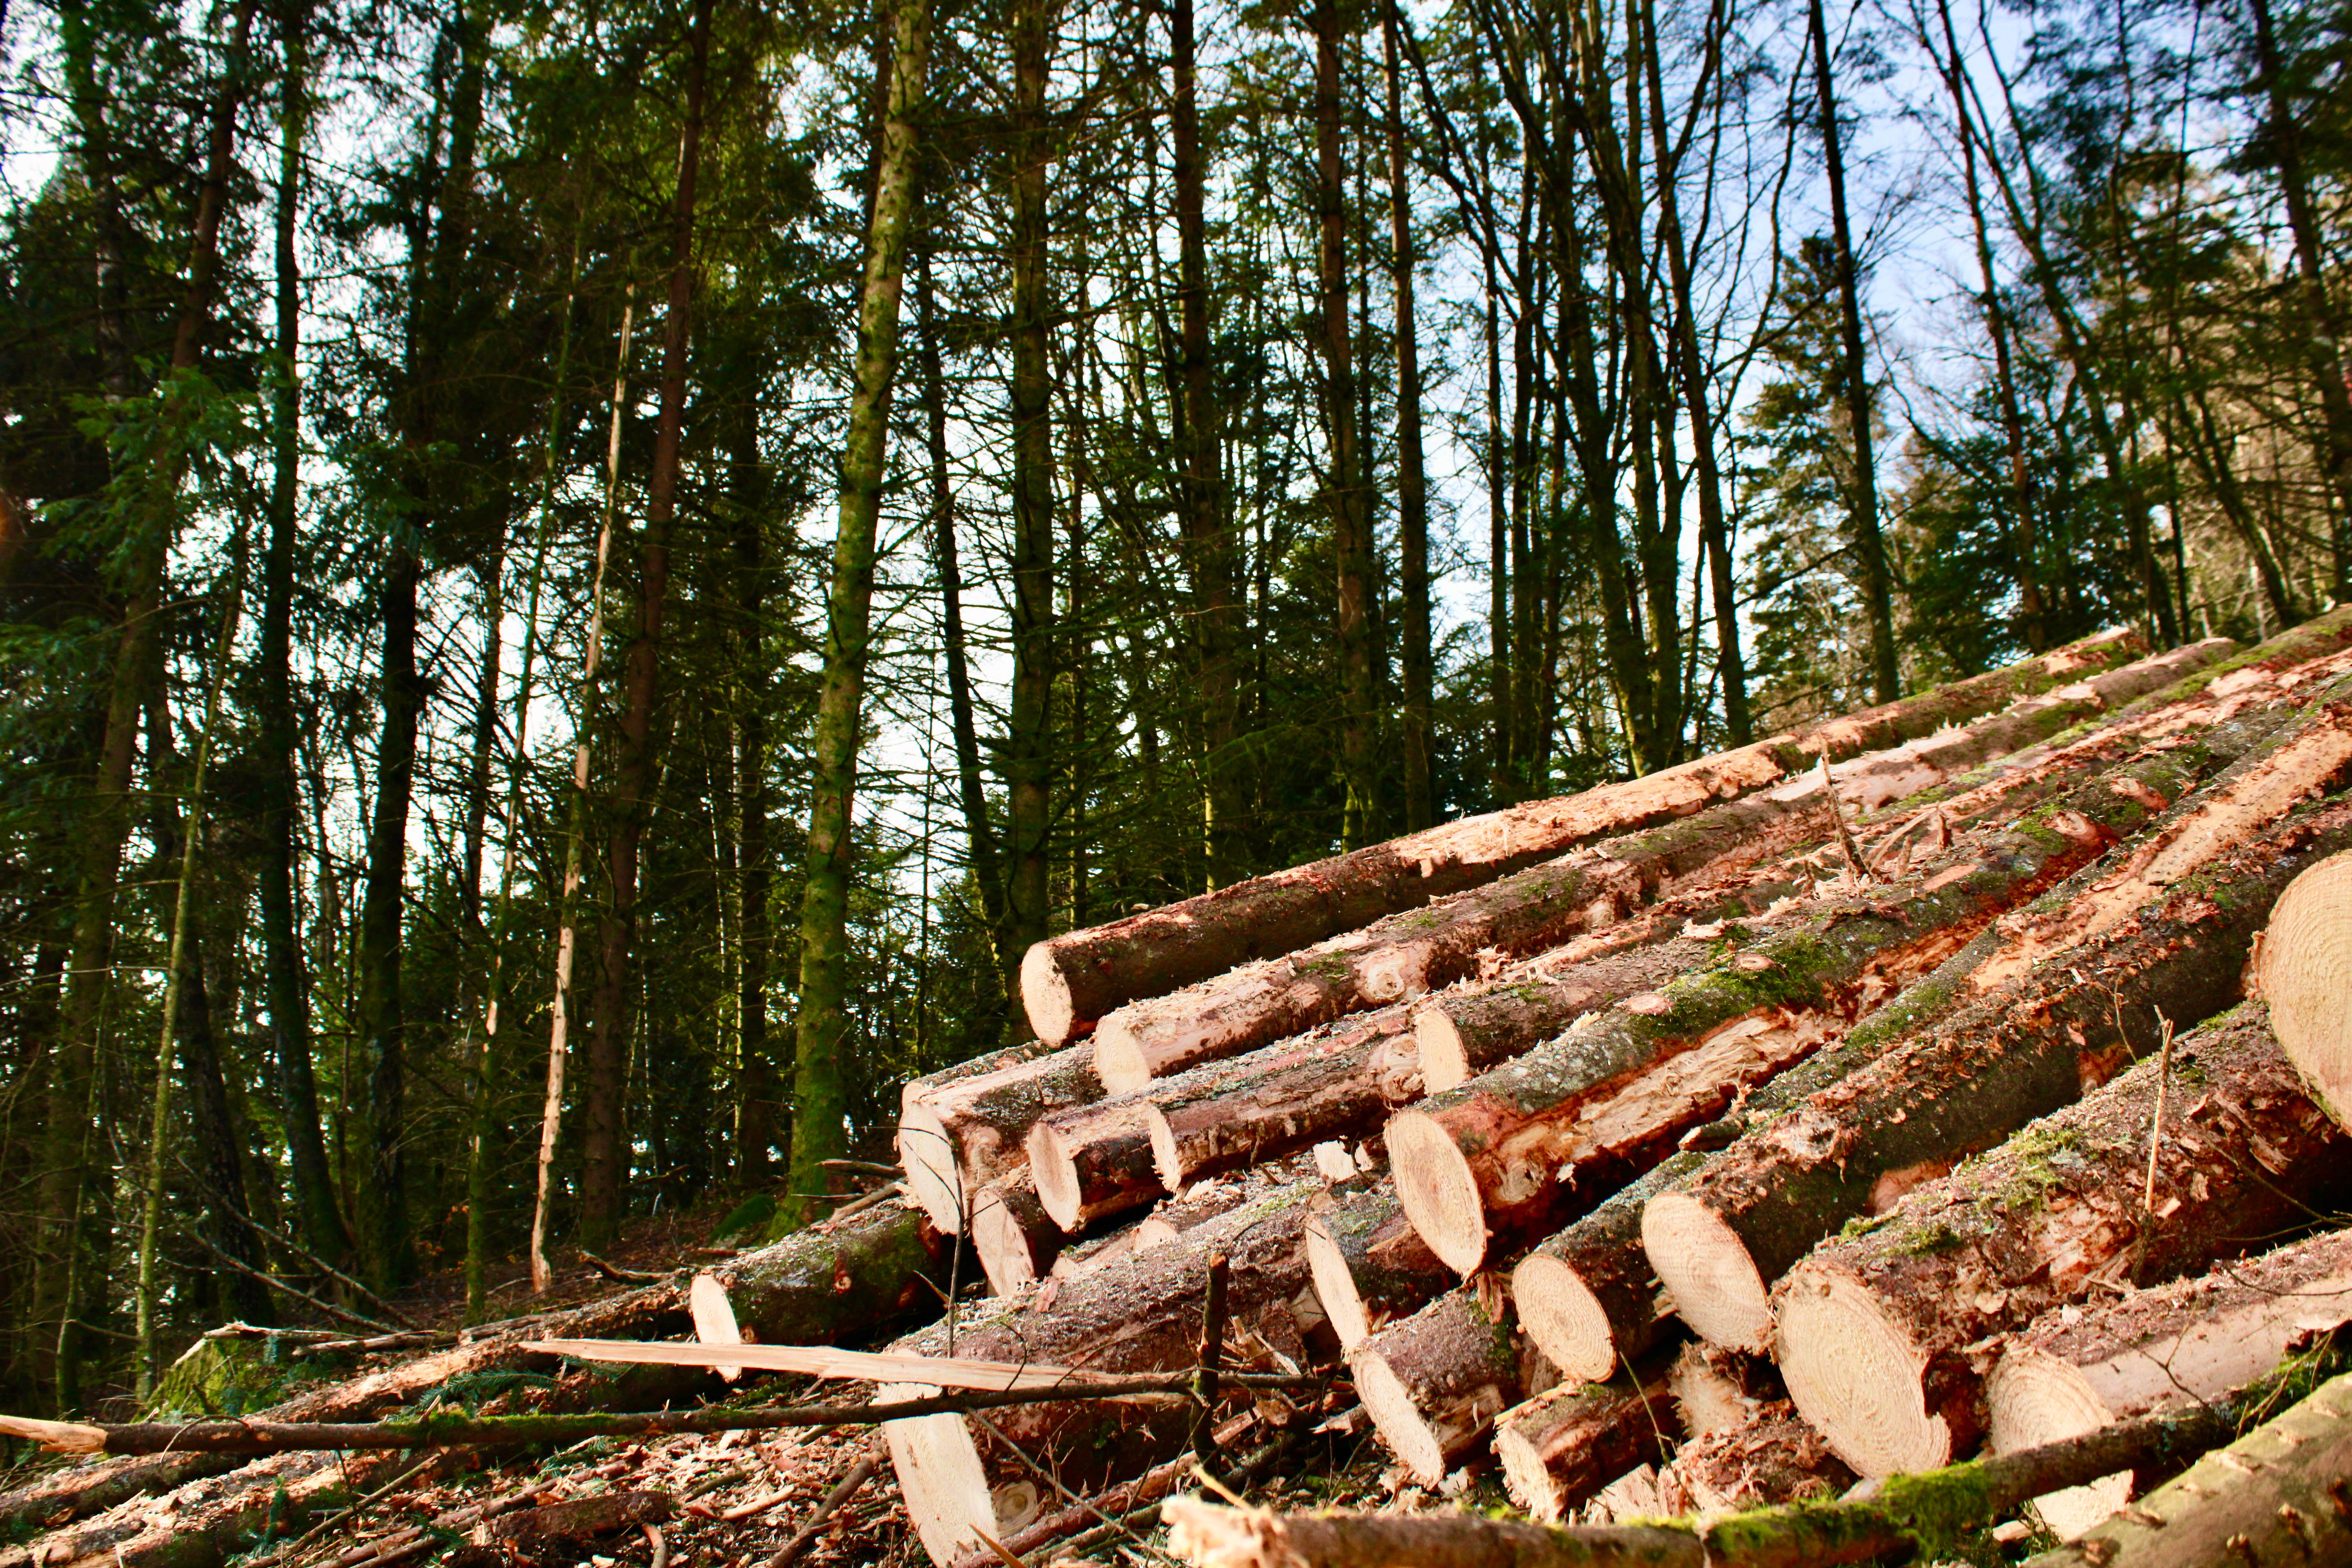 Photographie de troncs de bois, fraichement coupés, couchés sur le sol et formant une pile